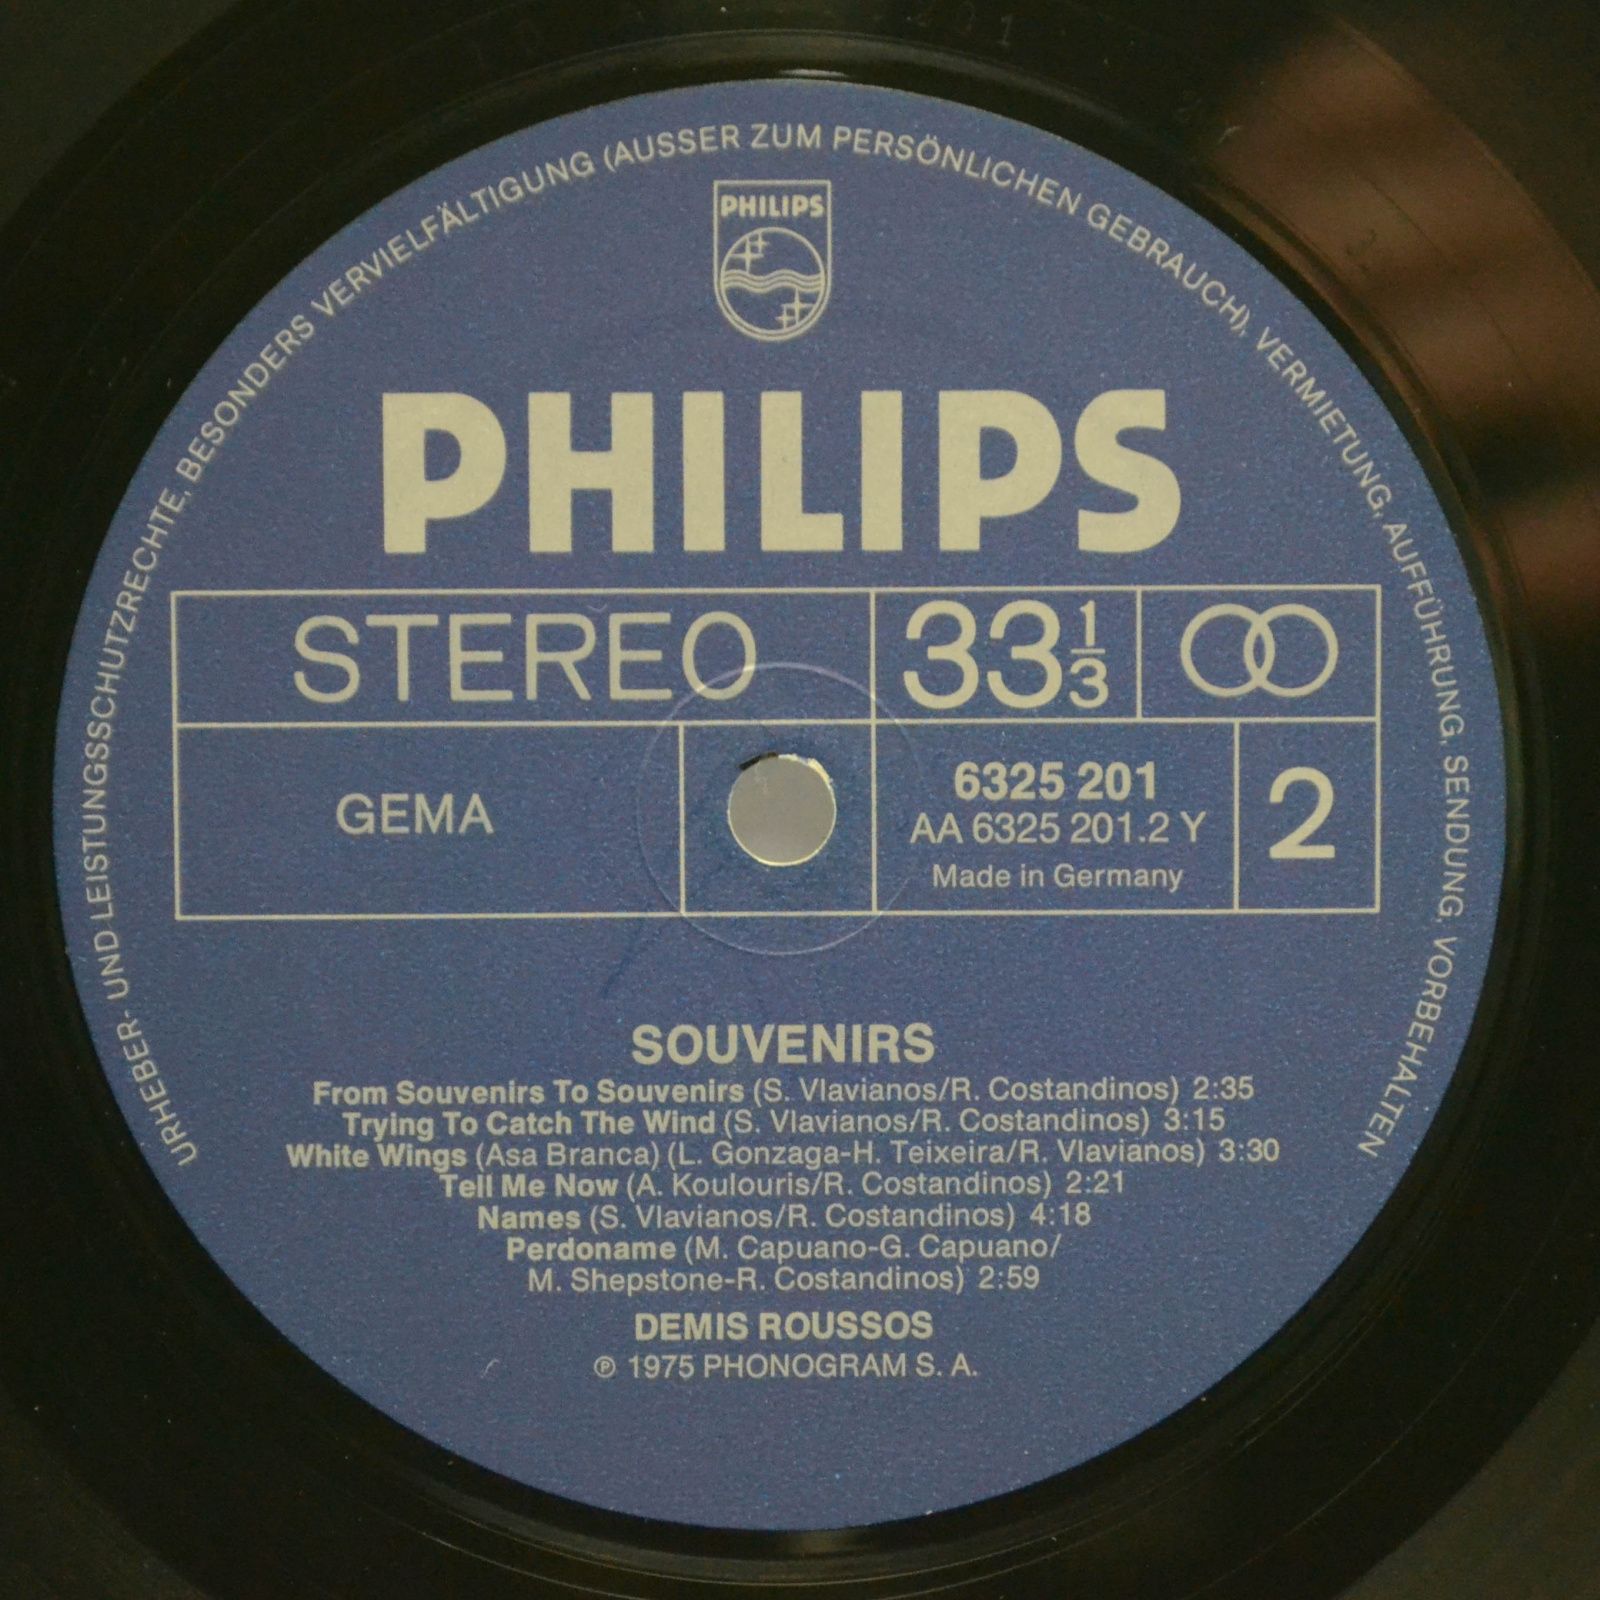 Demis Roussos — Souvenirs, 1975